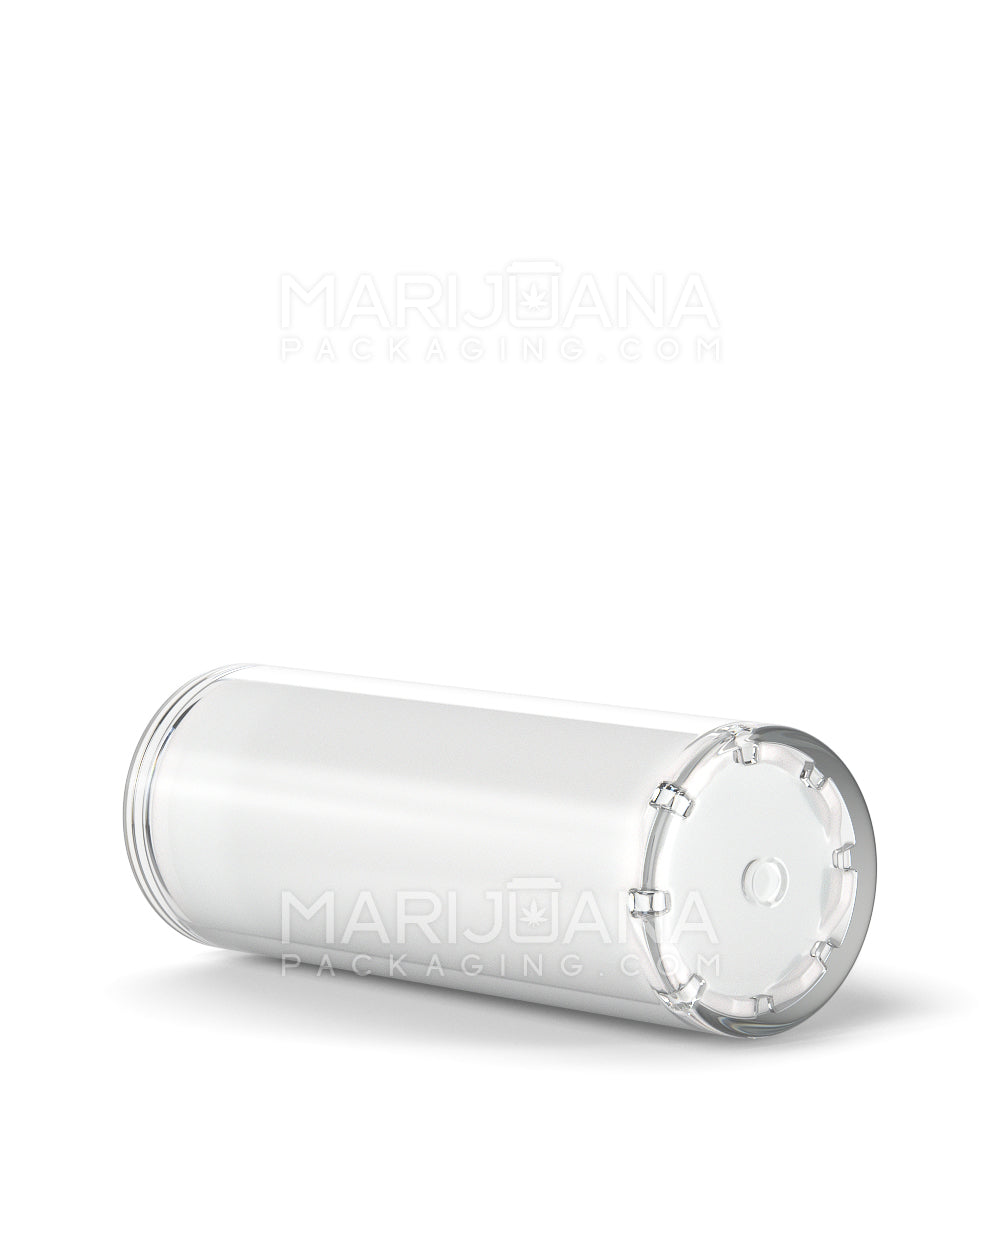 Child Resistant | Vape Cartridge Tube w/ White Plastic Insert | 80mm - White - 100 Count - 12